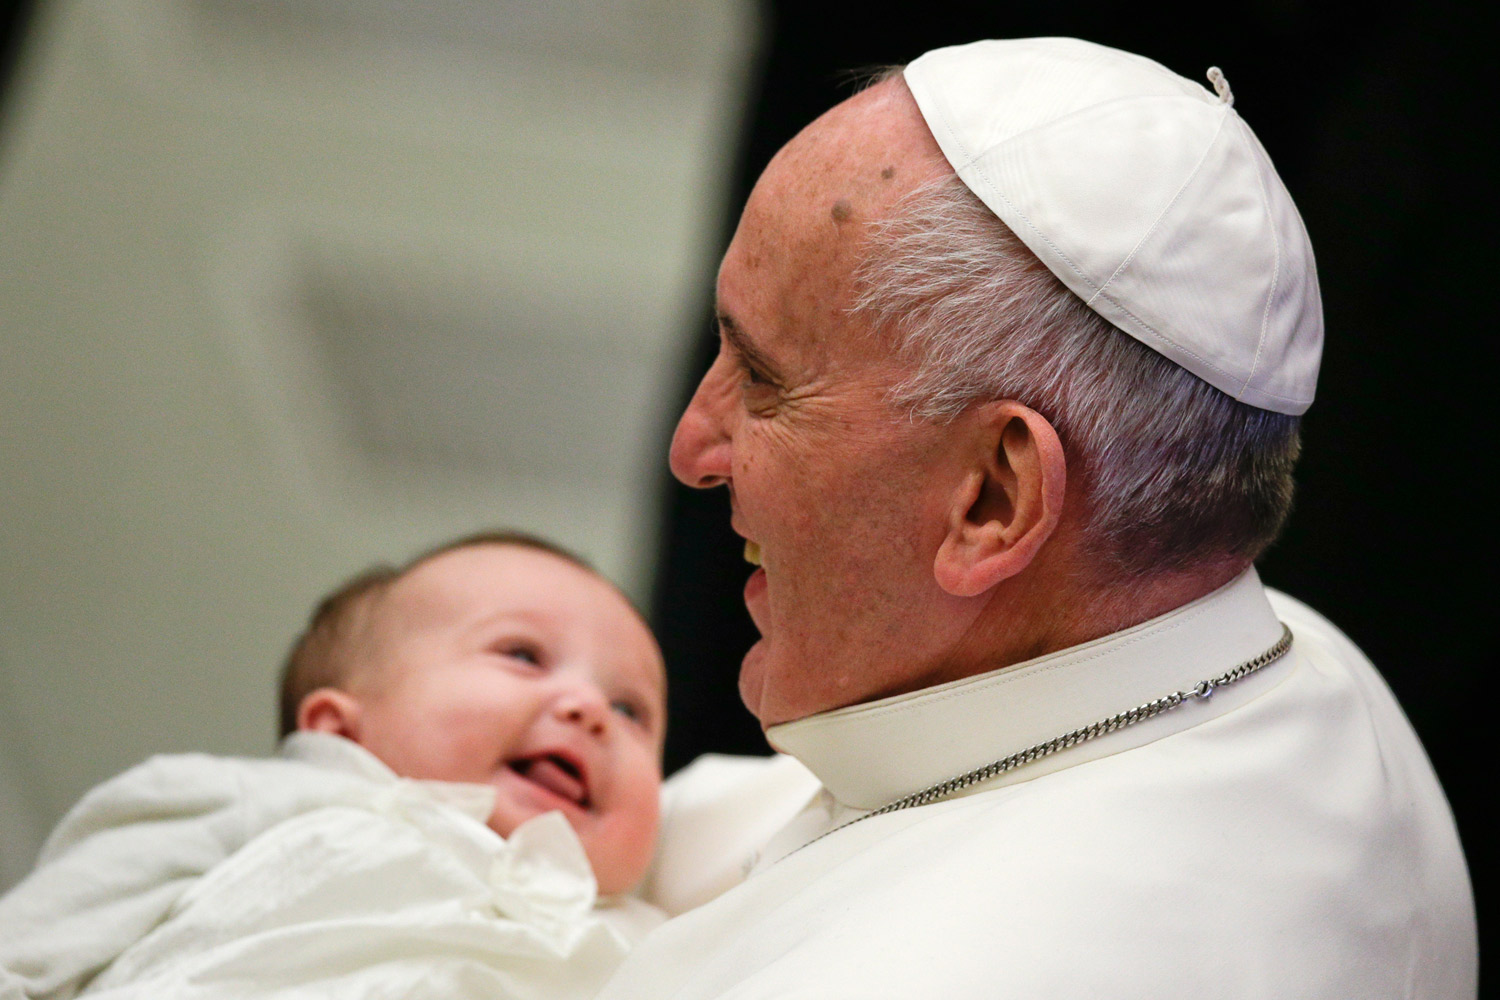 El papa bautiza a 33 niños y recuerda lo bello de trasmitir la fe cristiana